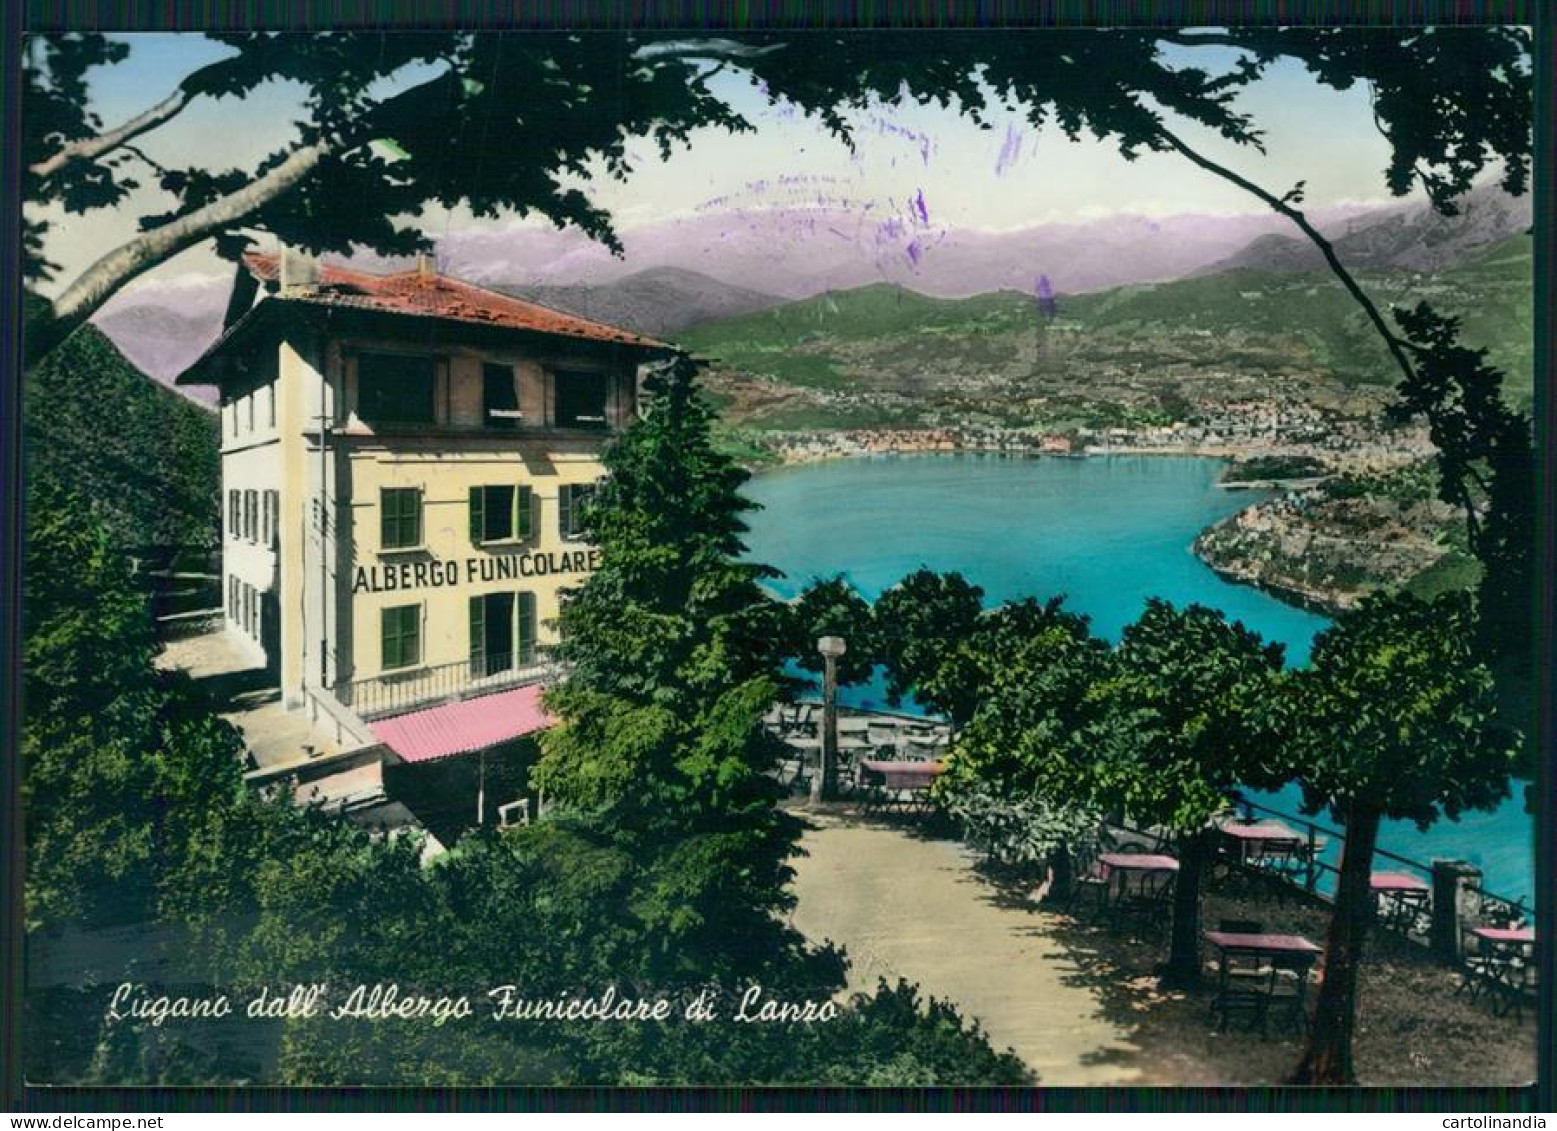 Svizzera Lugano Lago Di Funicolare Di Lanzo Foto FG Cartolina MZ5161 - Sondrio